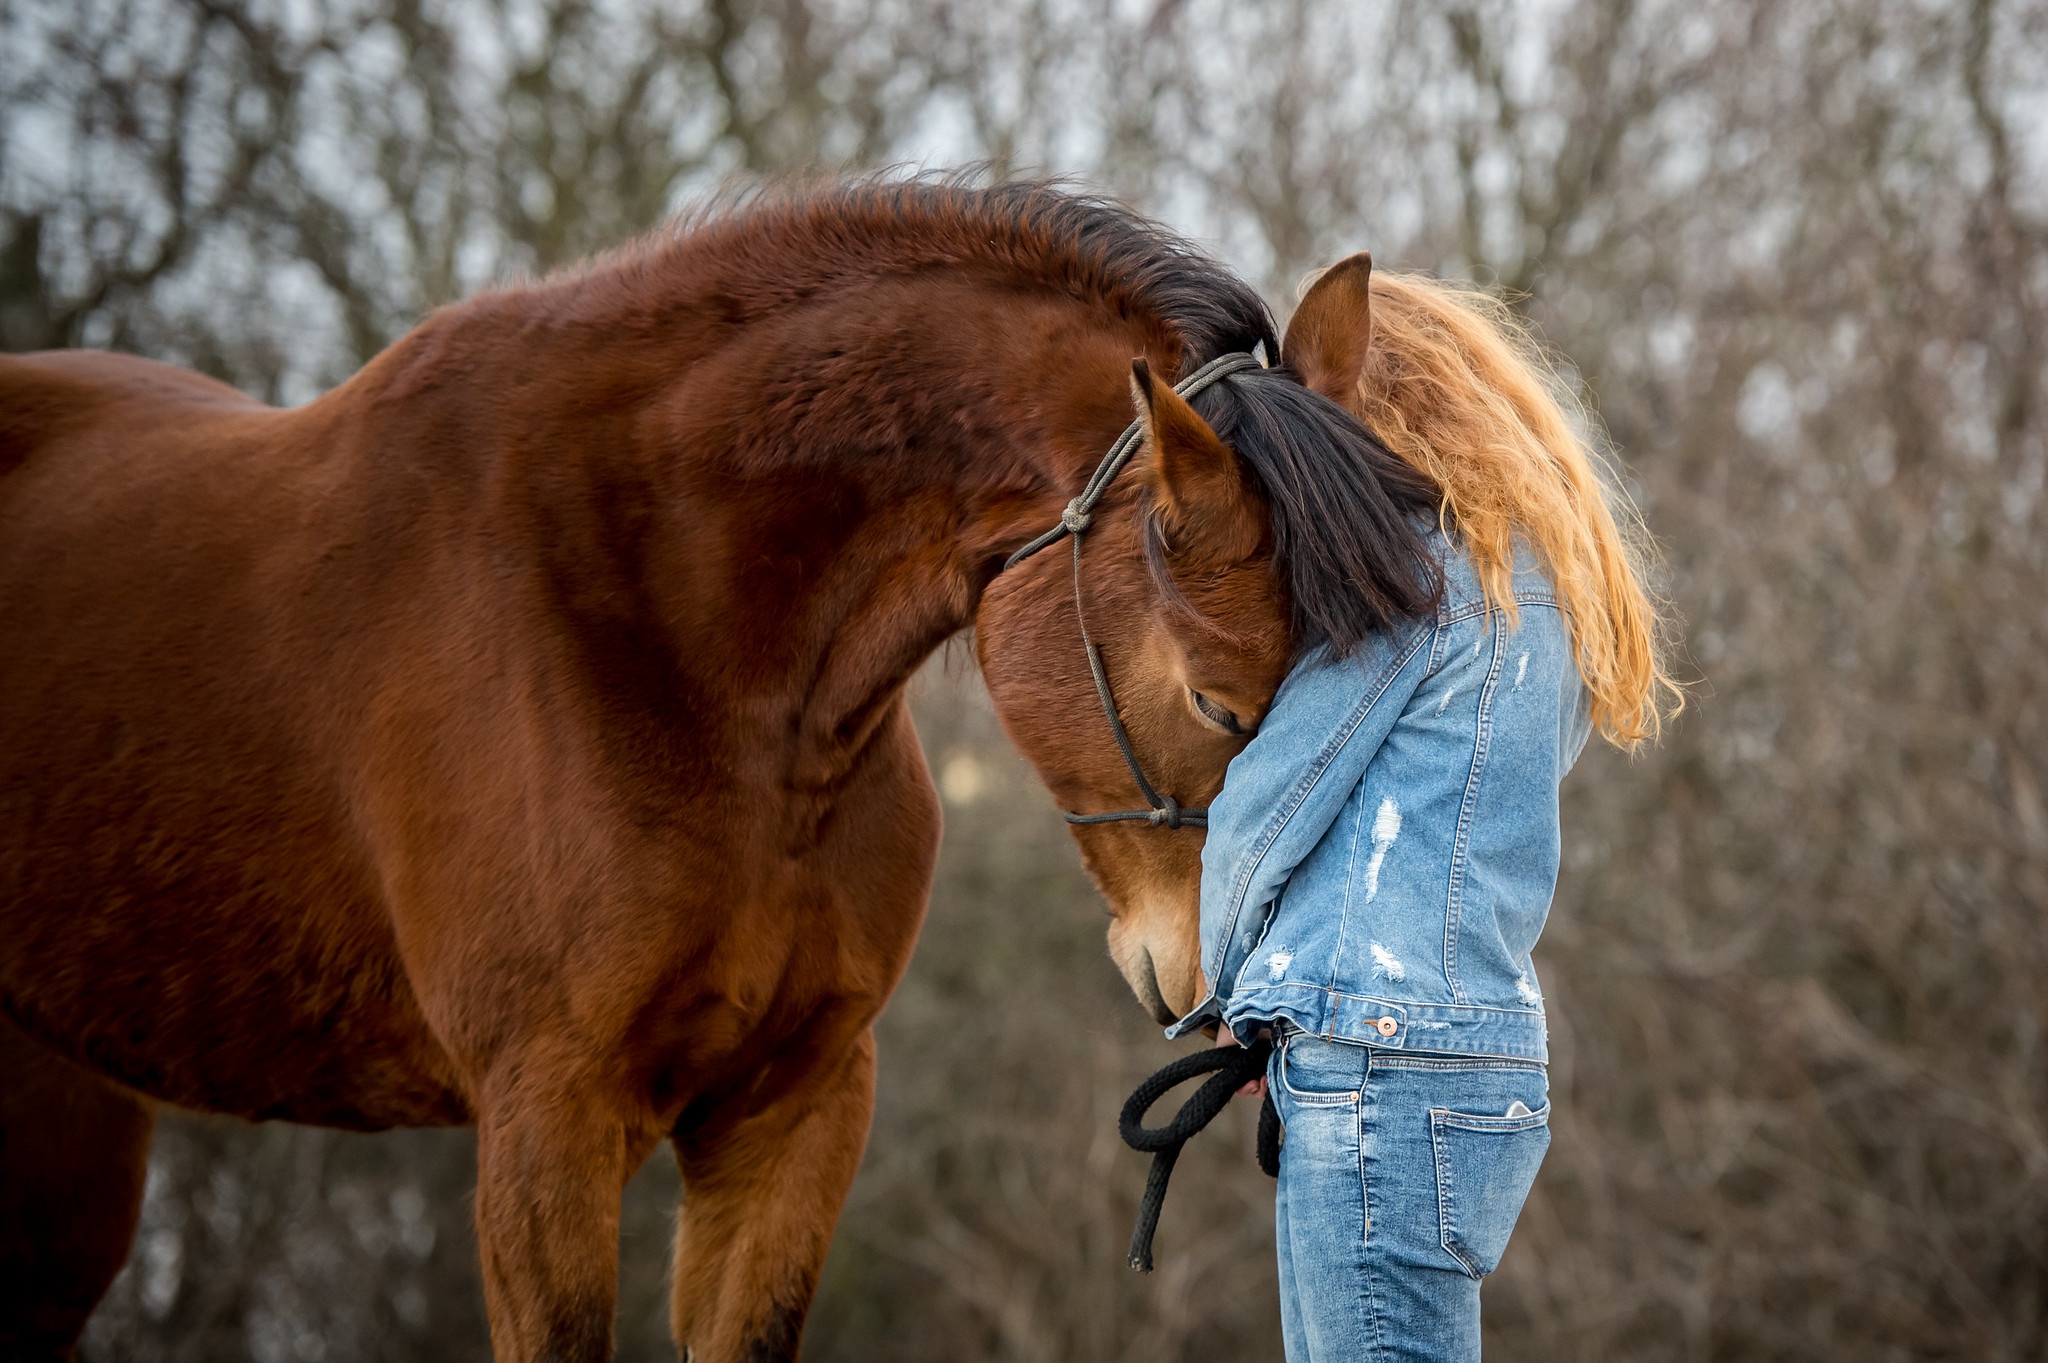 Добрая лошадка. Обои лошади. Девушка с рыжими волосами на лошади. Рыжая девочка и лошадь обои. Позы лошади и человека для обработки.